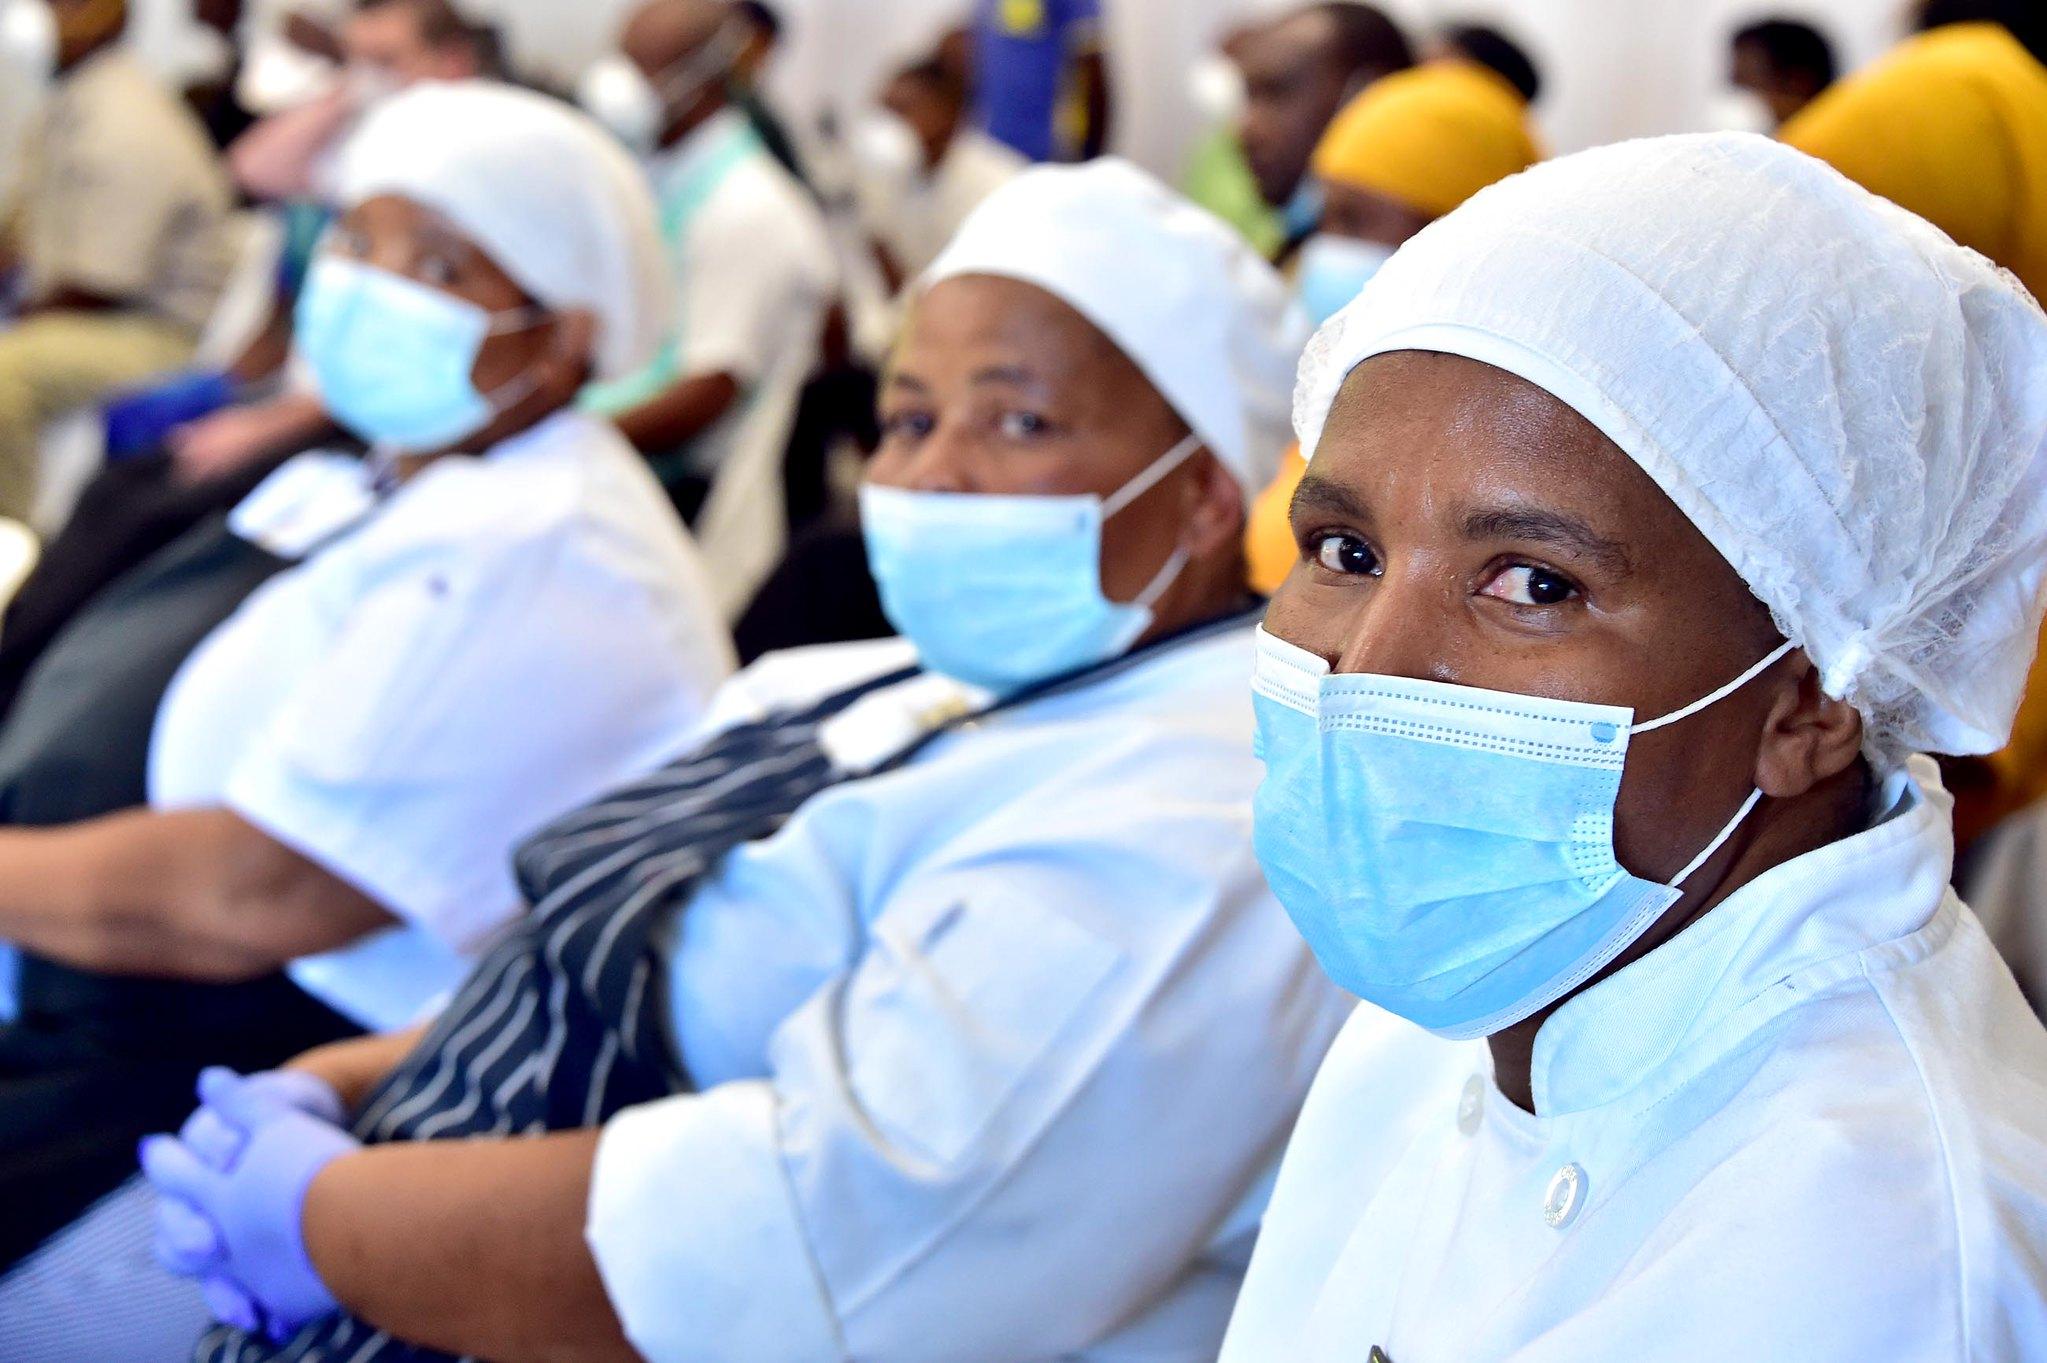 O continente africano foi um dos mais afetados pela pandemia do coronavírus